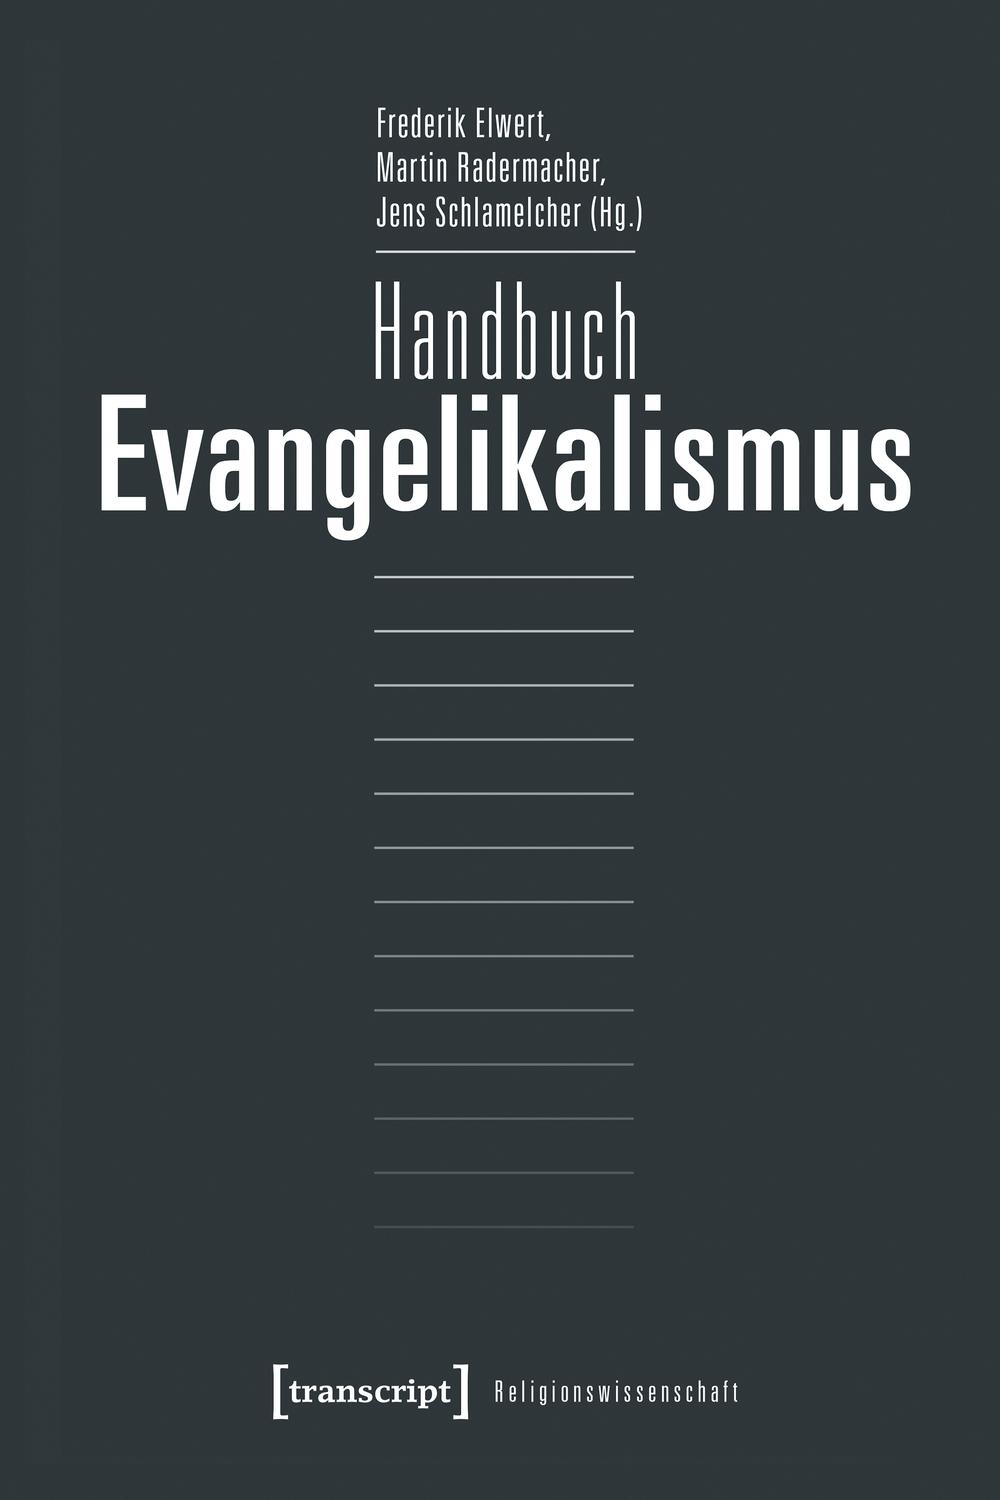 Handbuch Evangelikalismus - Frederik Elwert, Martin Radermacher, Jens Schlamelcher